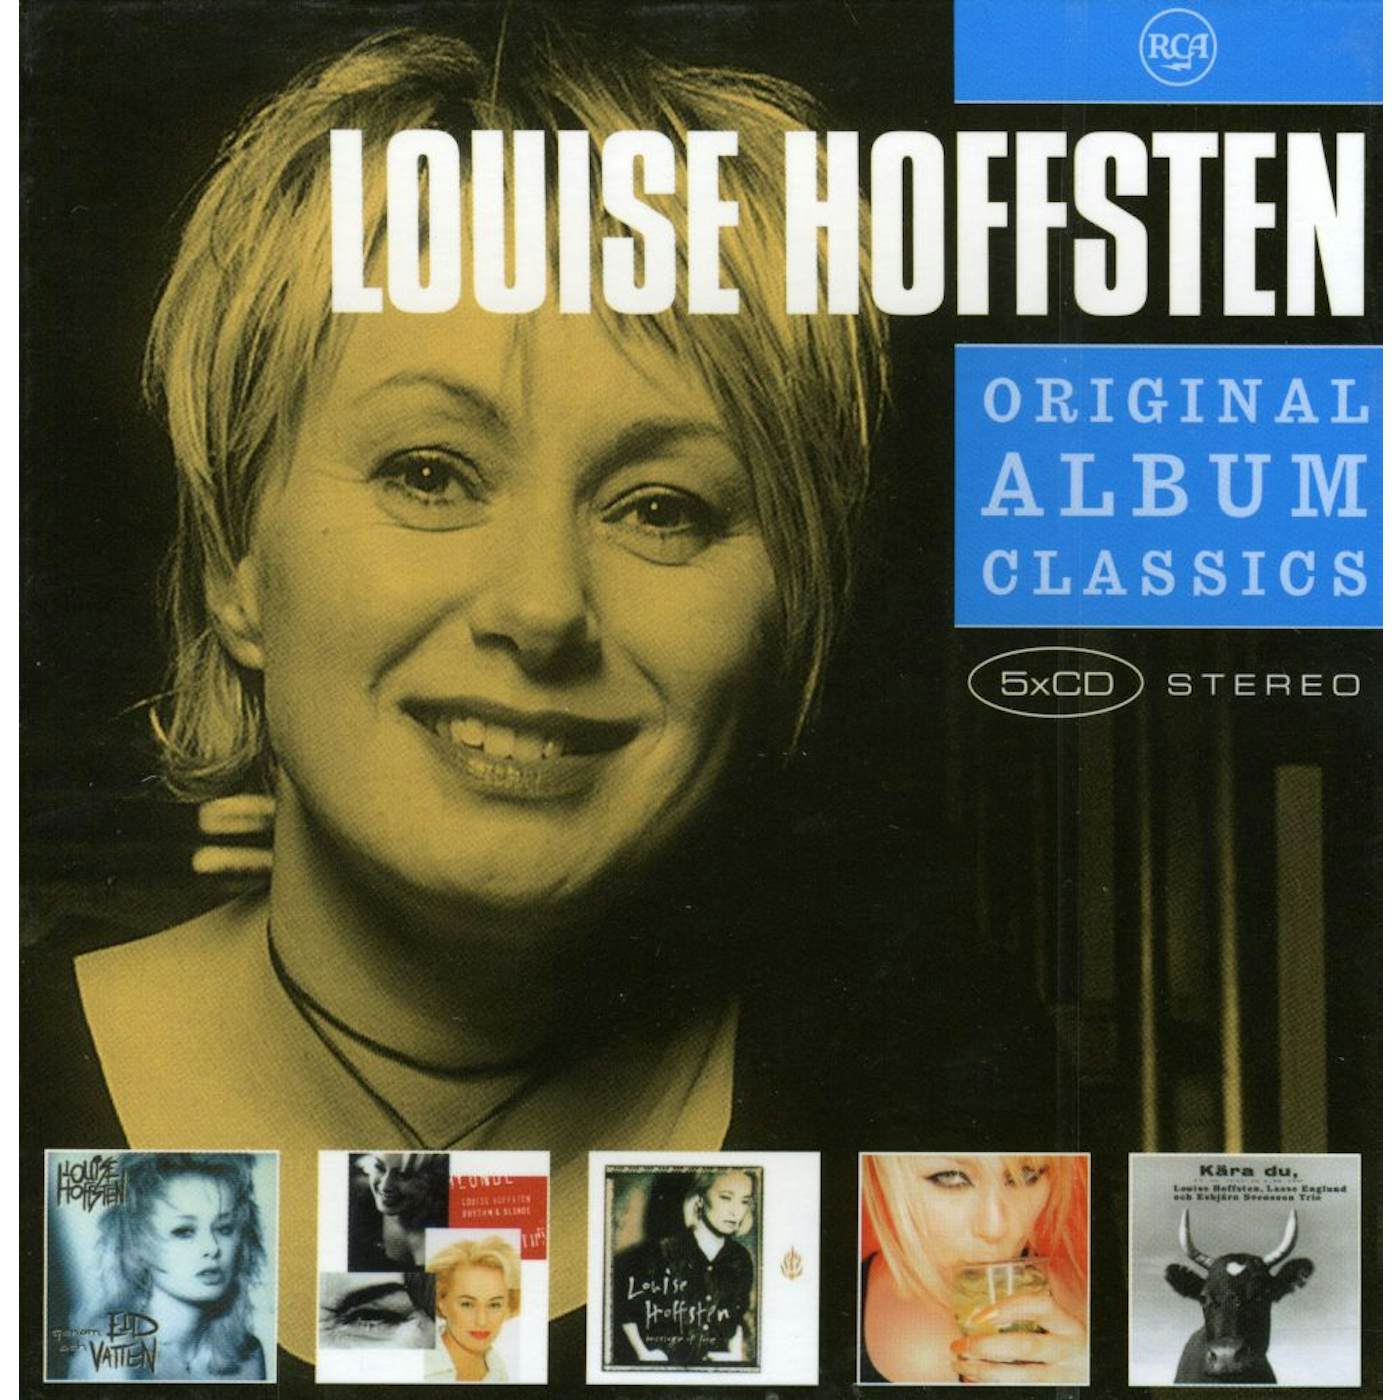 Louise Hoffsten ORIGINAL ALBUM CLASSICS CD